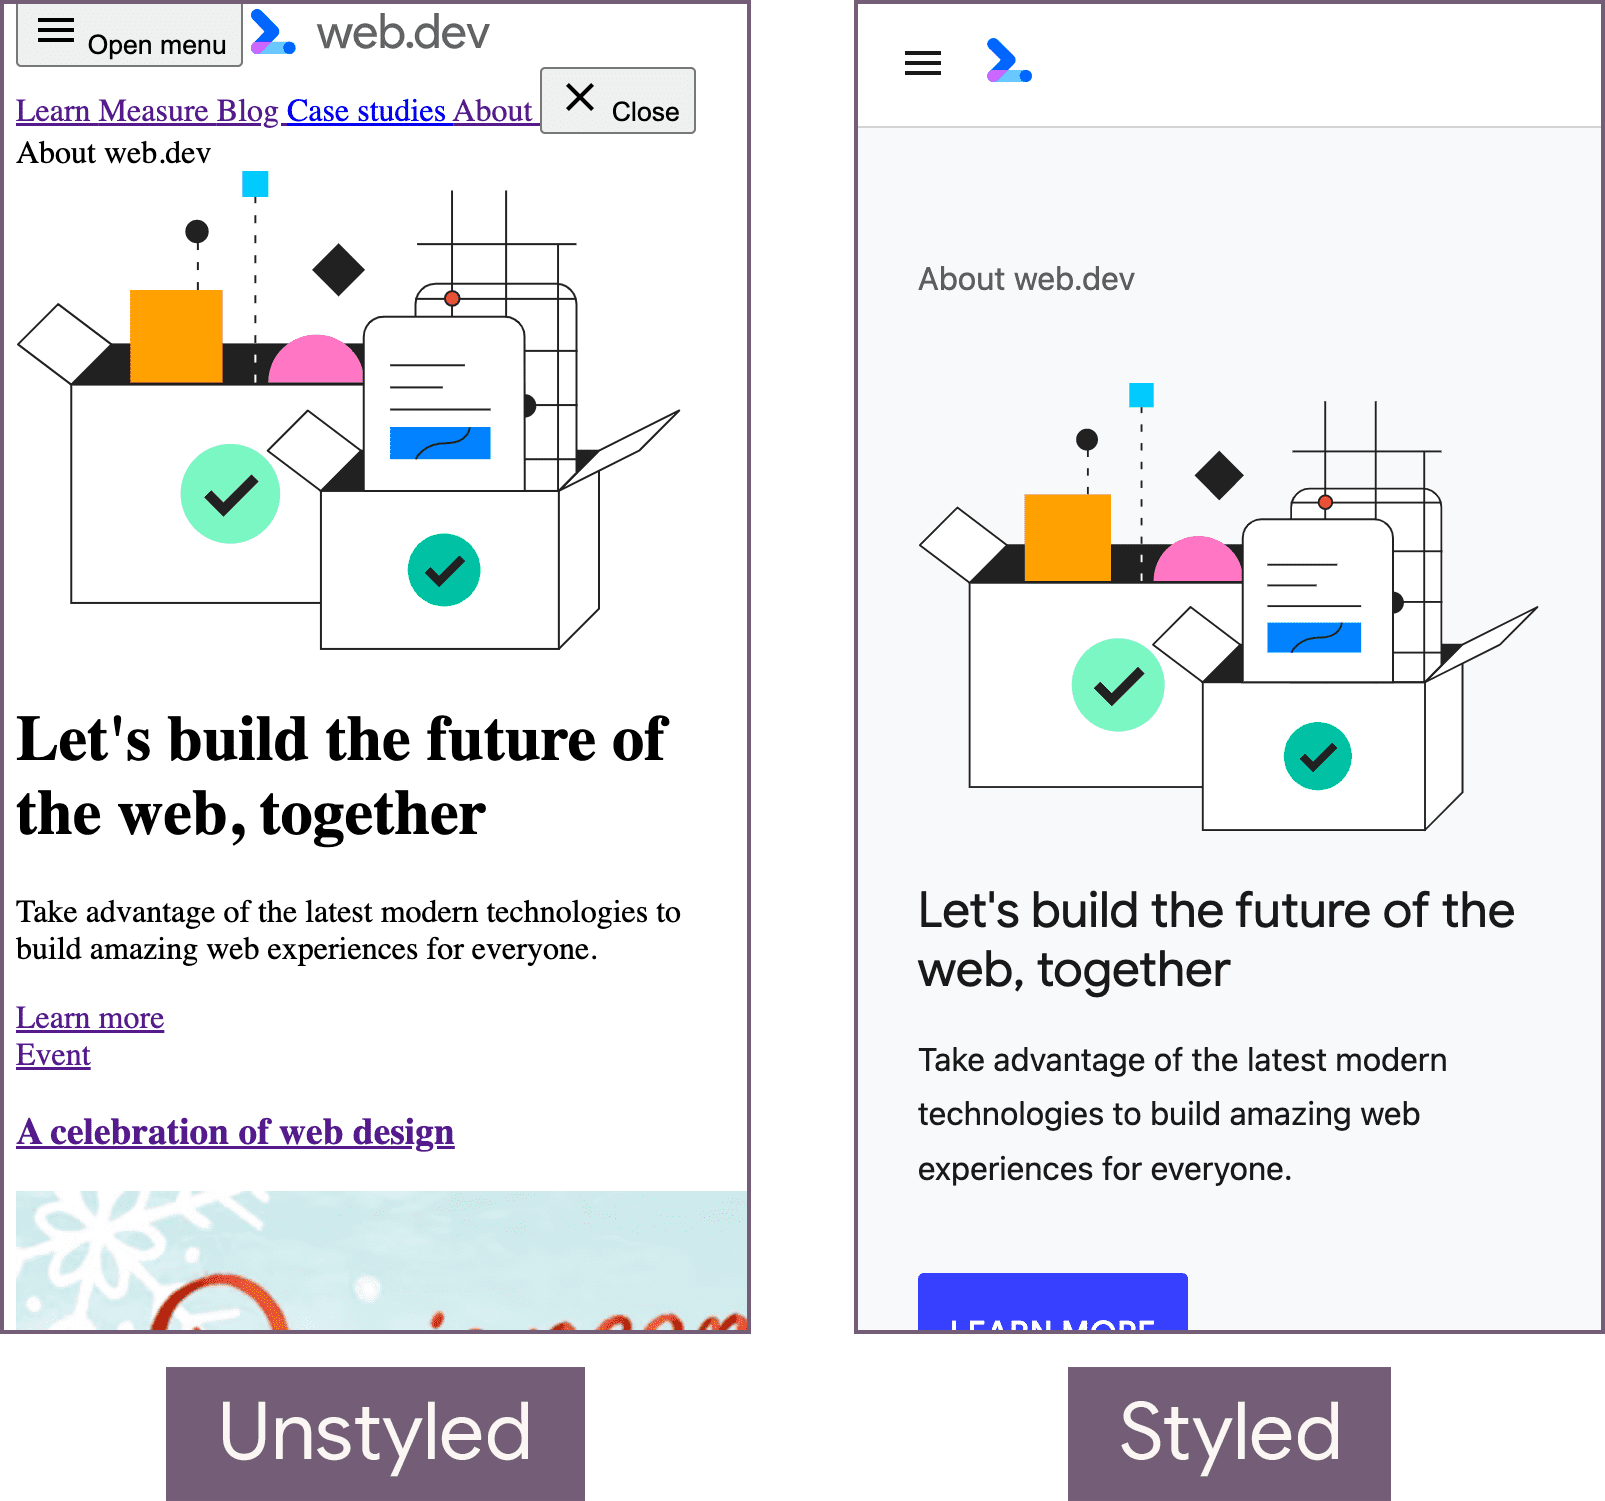 web.dev 首頁處於未樣式狀態 (左側) 和樣式設定狀態 (右側)。